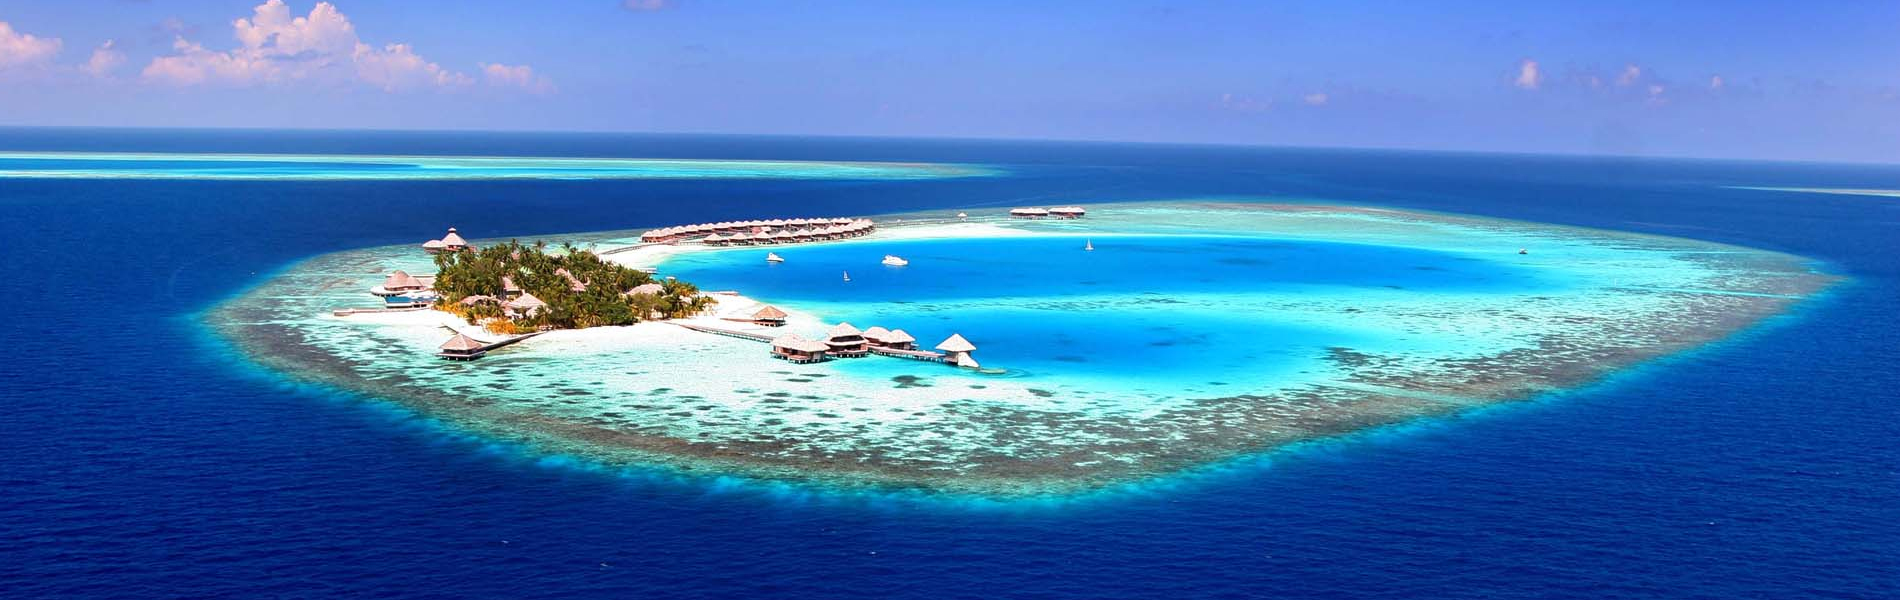 tourist destination in maldives